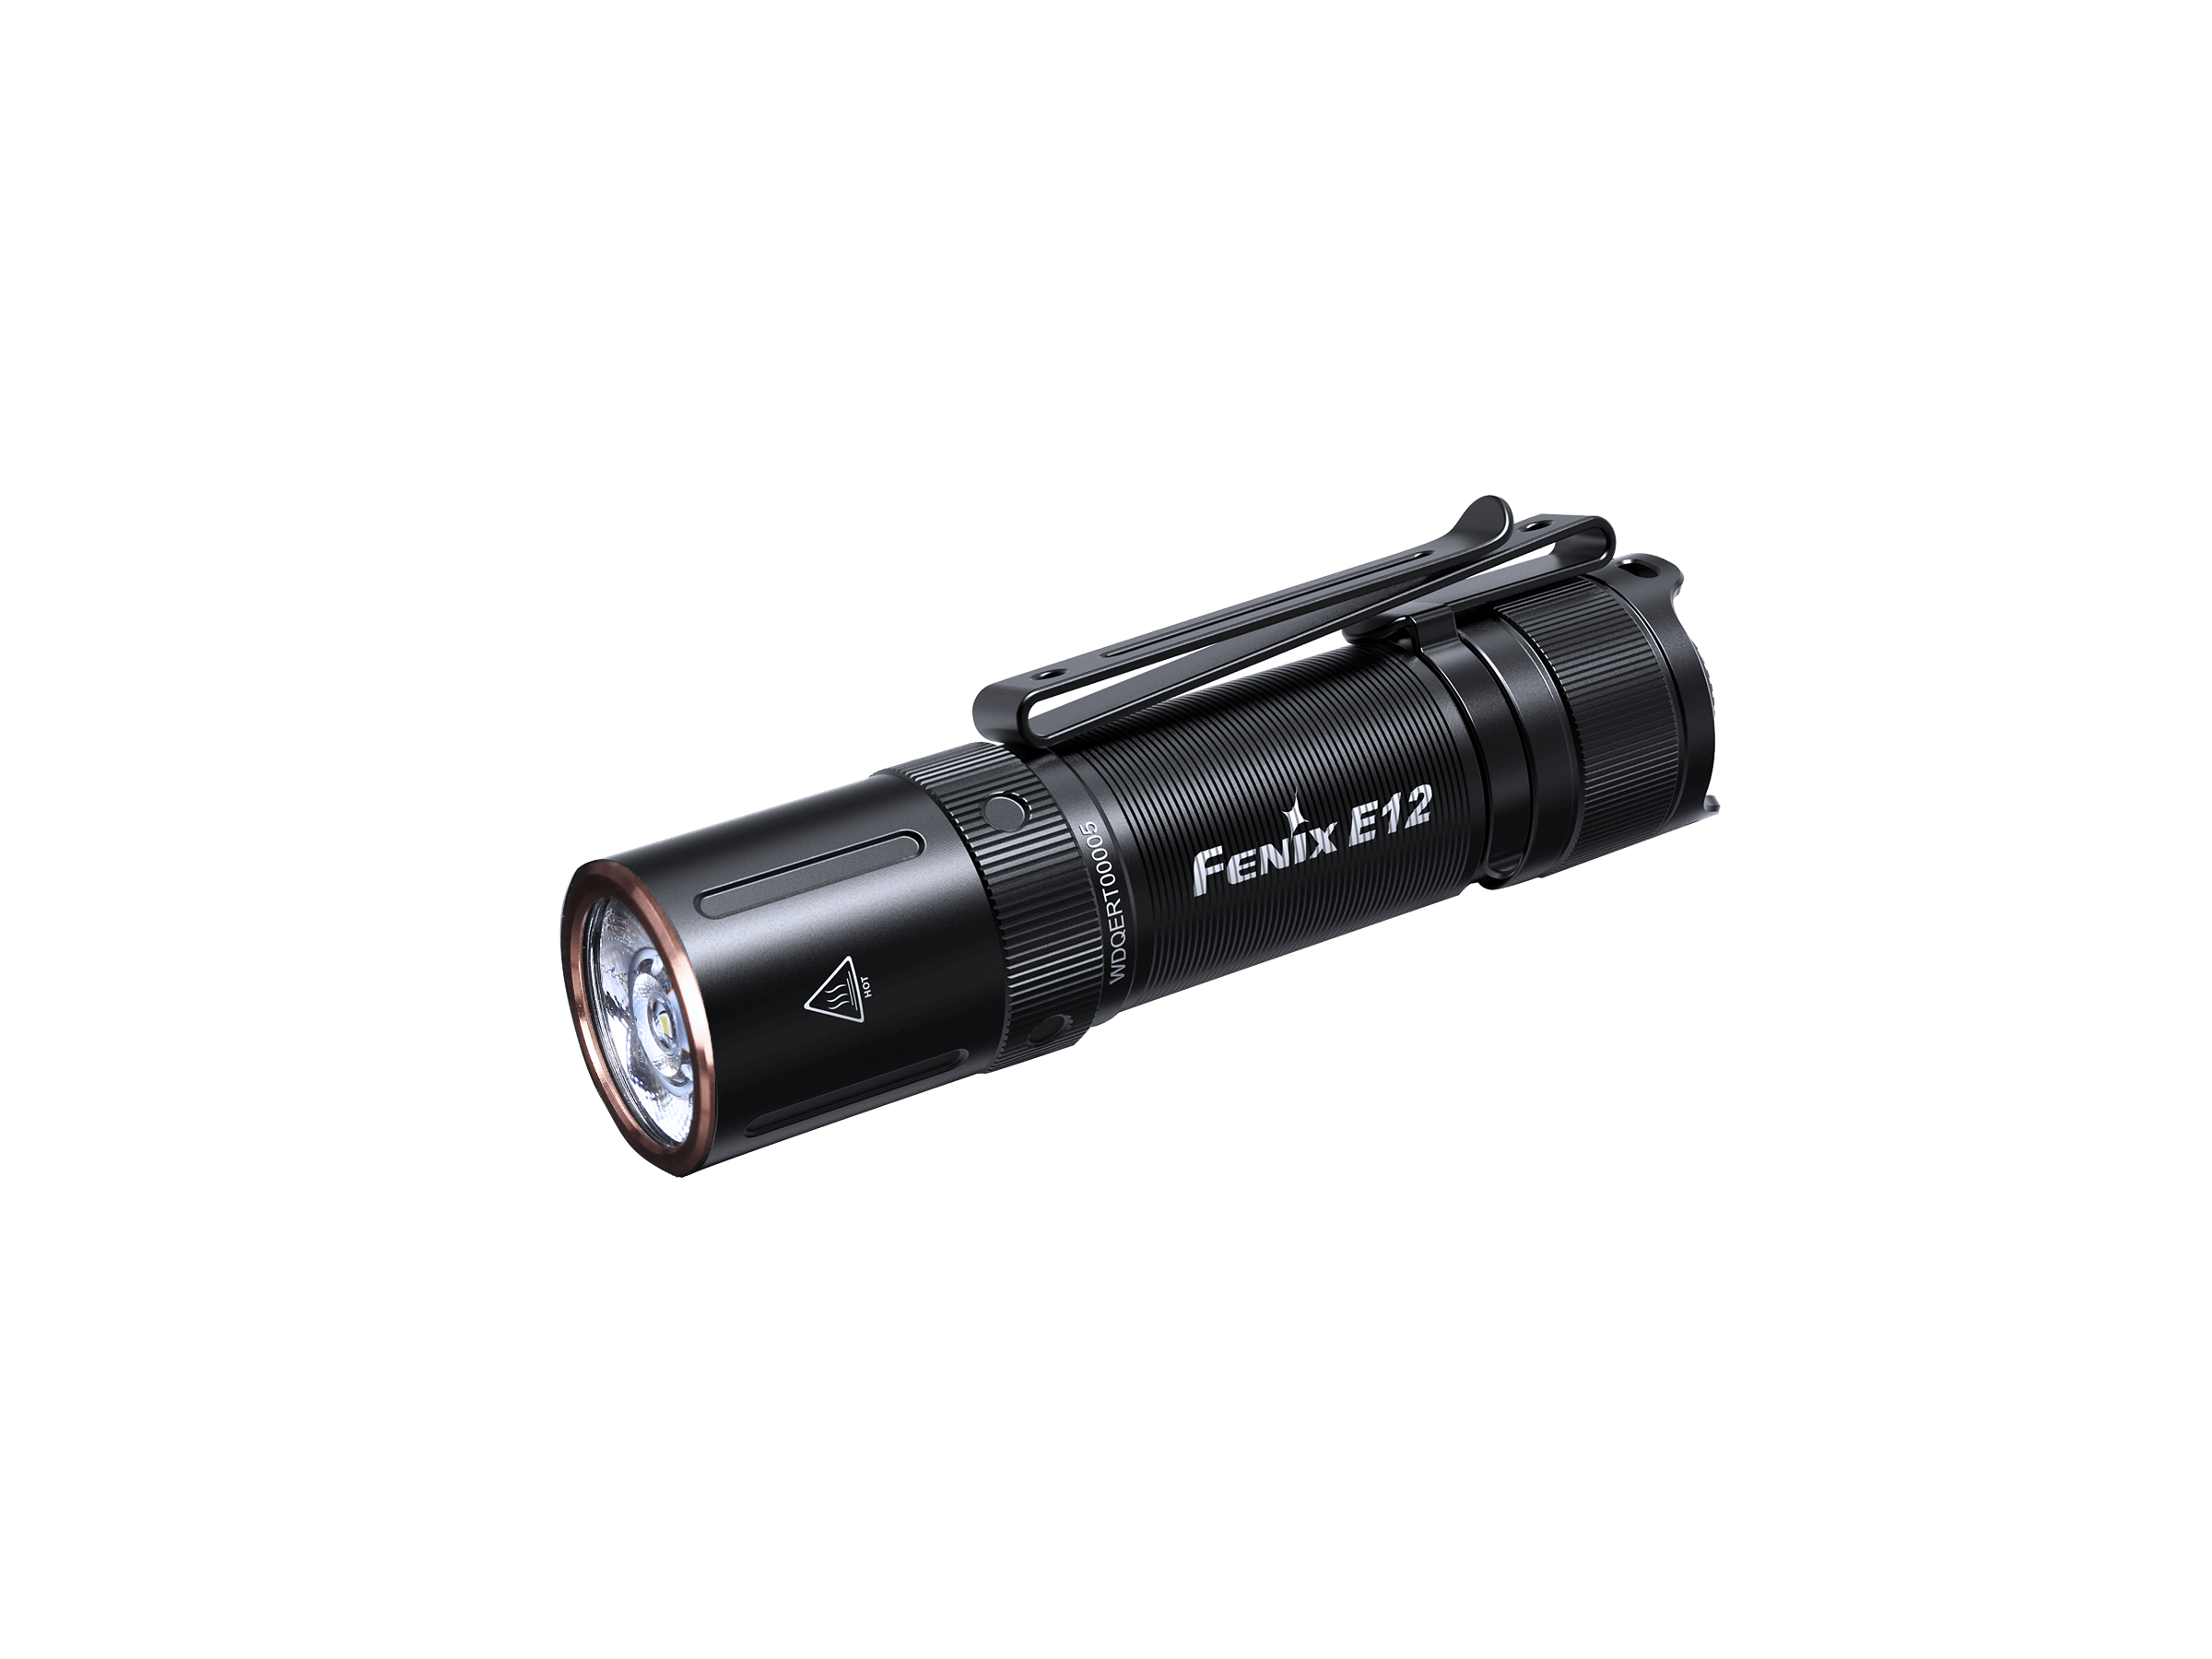 VECTOR 800 Lumen Waterproof LED Handheld Spotlight, 6 AA Batteries